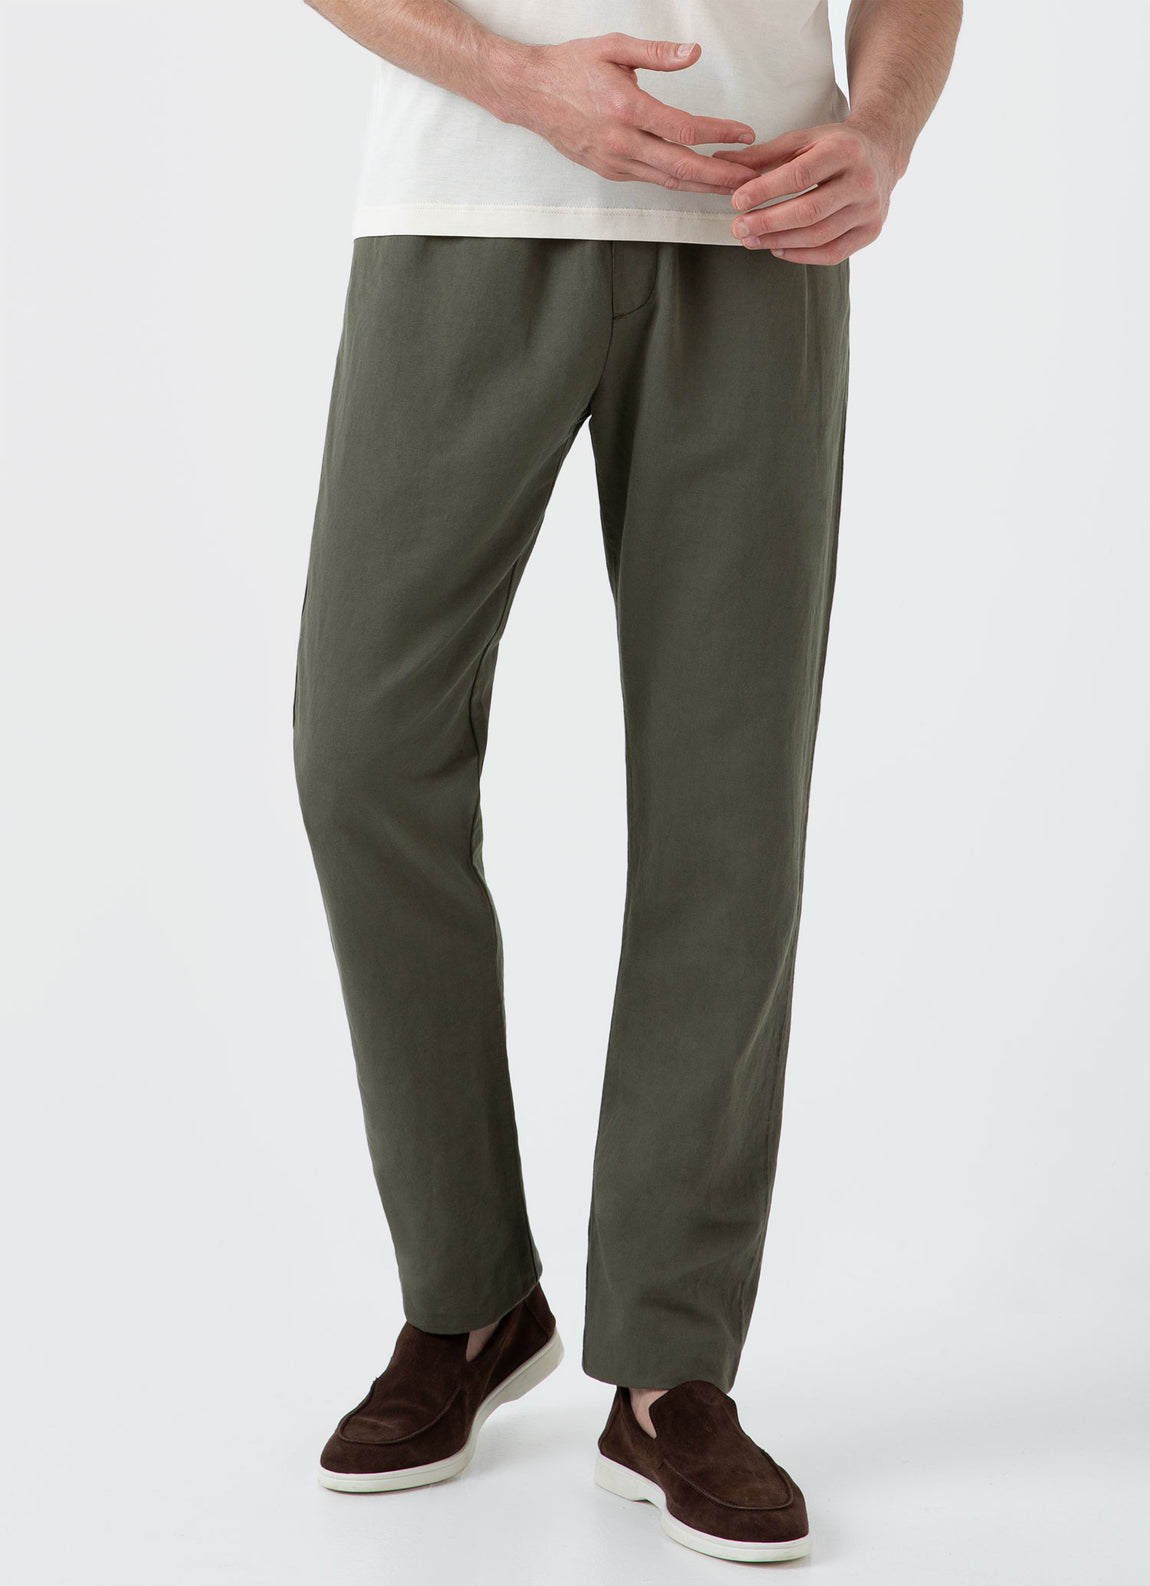 Men's Cotton Linen Drawstring Trouser in Khaki | Sunspel